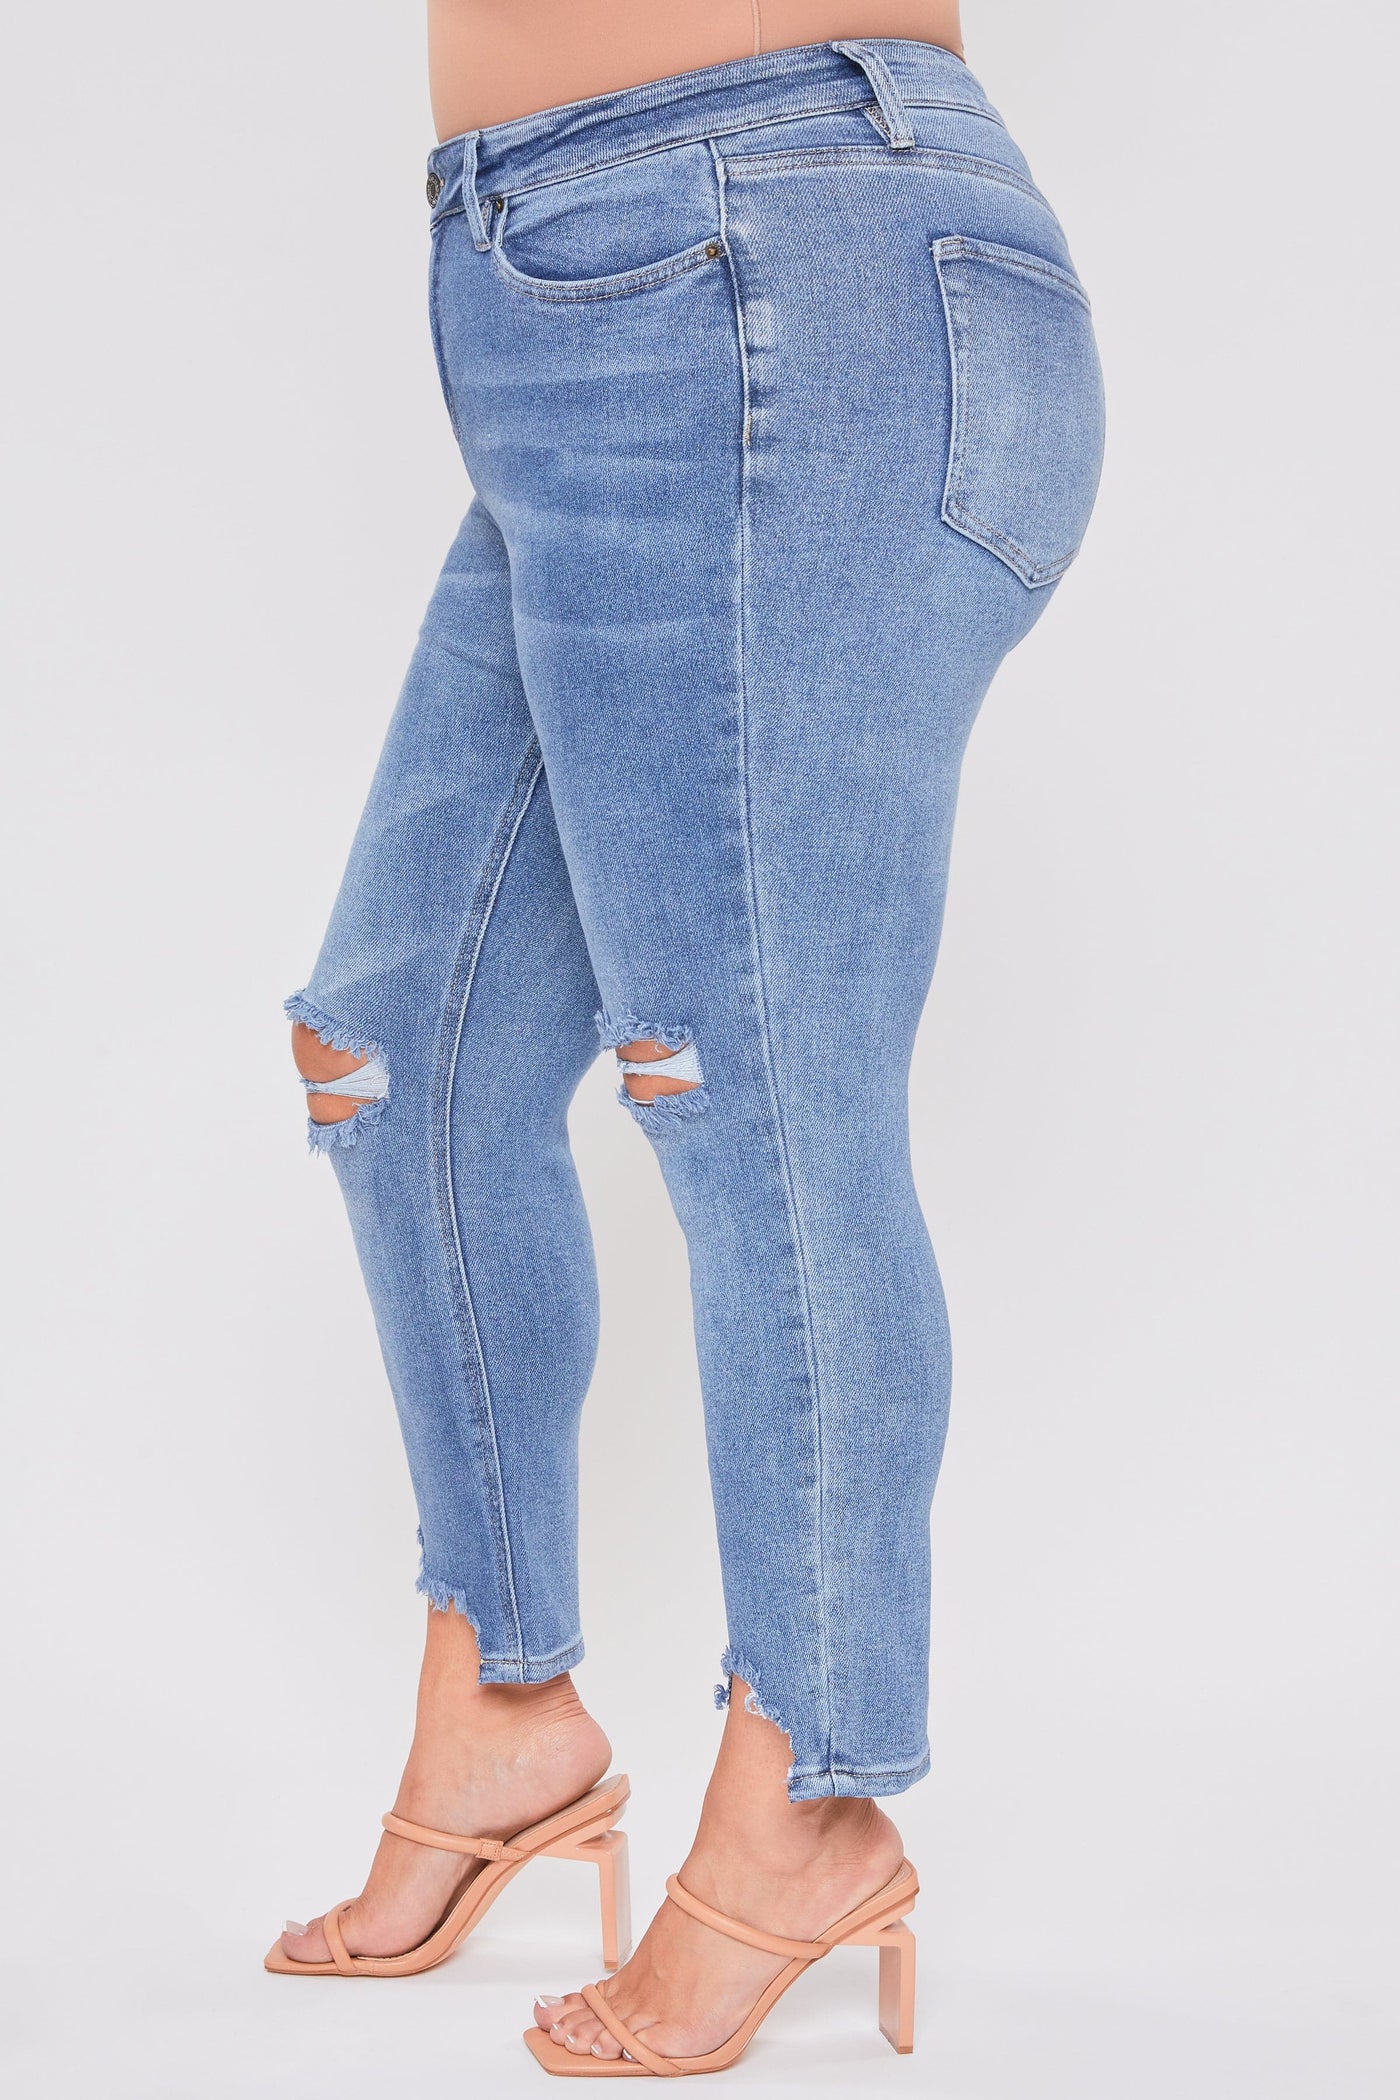 Plus Size Women's Dream Slim Straight Ankle Jeans With Hem Destruction-Sale